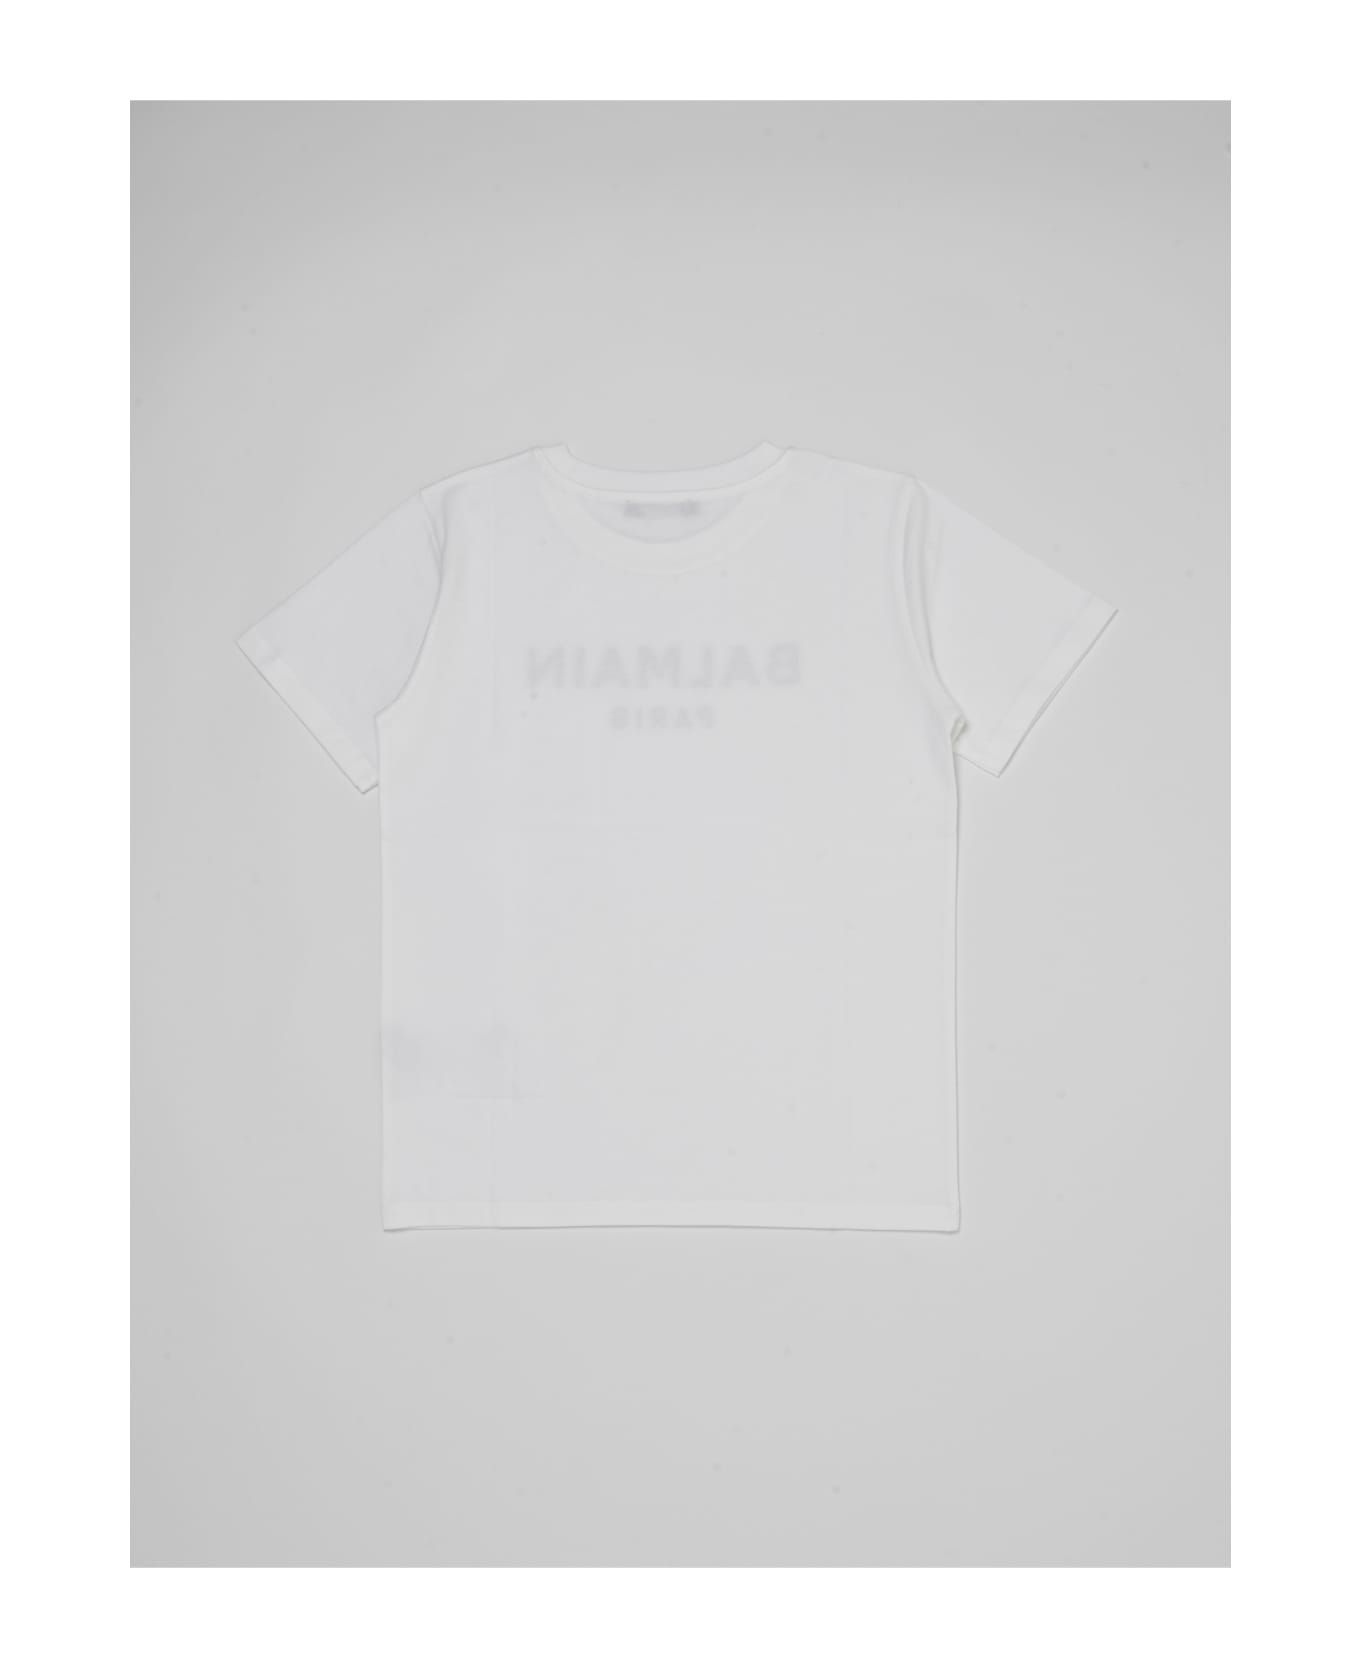 Balmain T-shirt T-shirt - BIANCO Tシャツ＆ポロシャツ